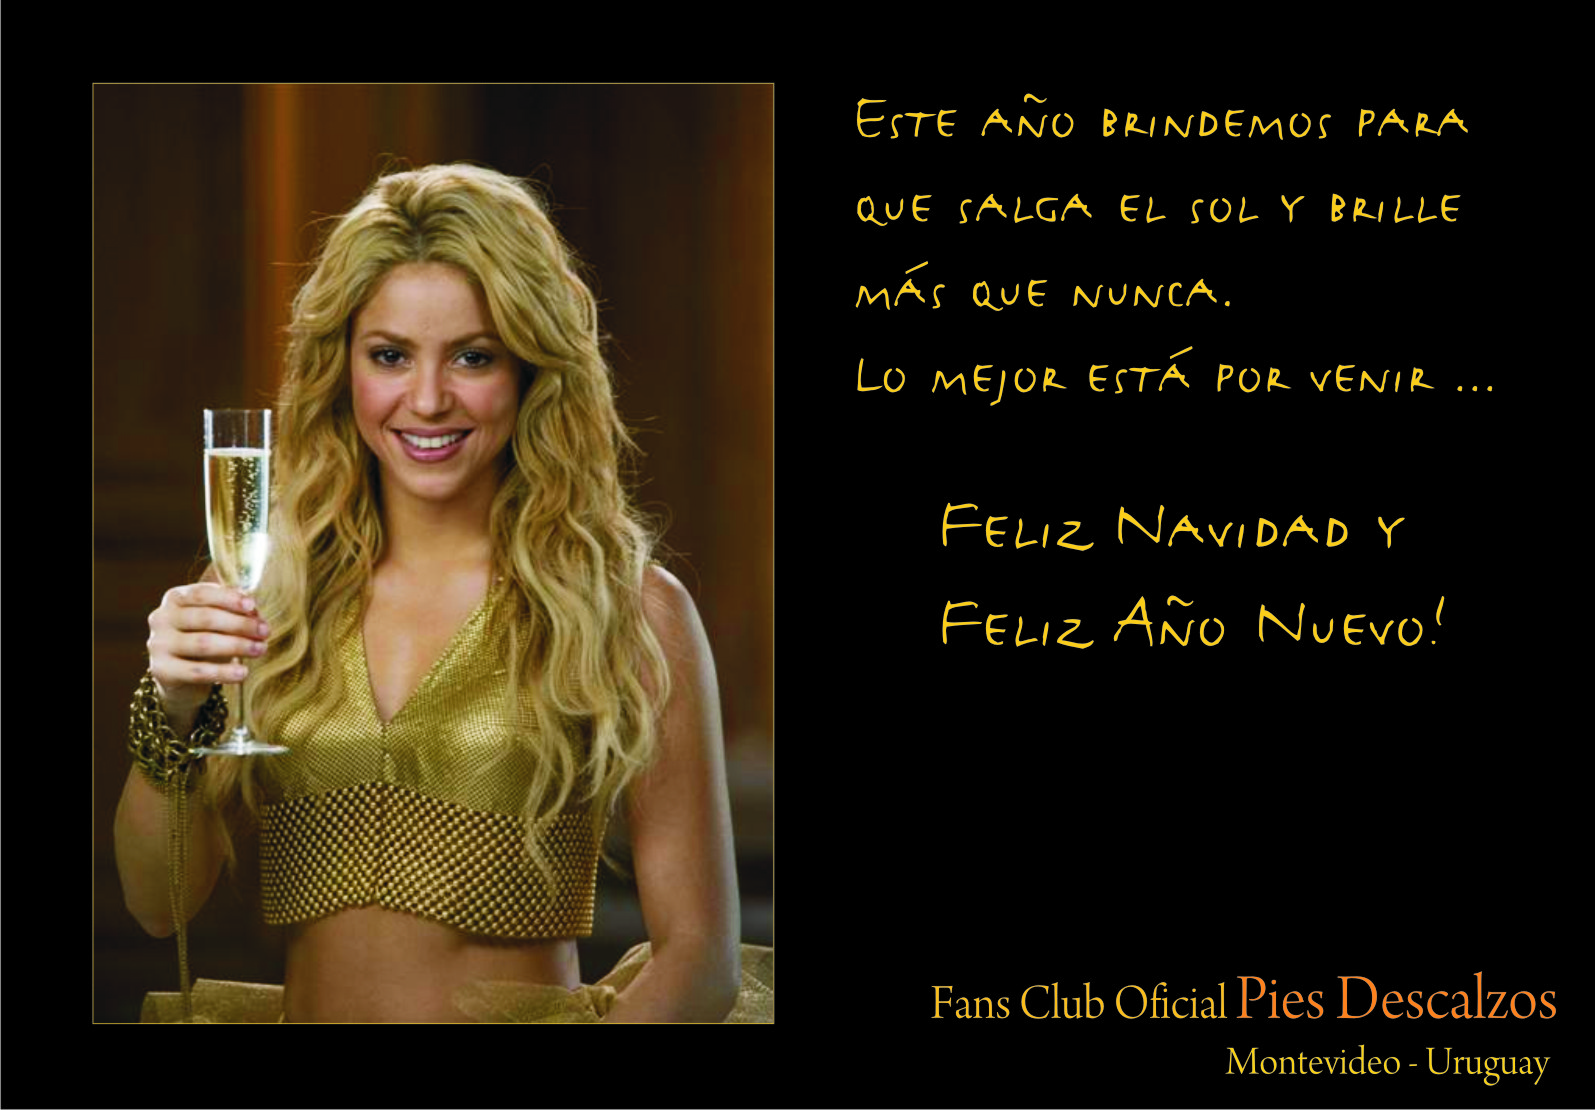 http://2.bp.blogspot.com/-bCIyno_DnyM/Tg-9vAL-KeI/AAAAAAAAAZg/_D50OMSCsXw/s1600/postal+Shakira+2010.jpg